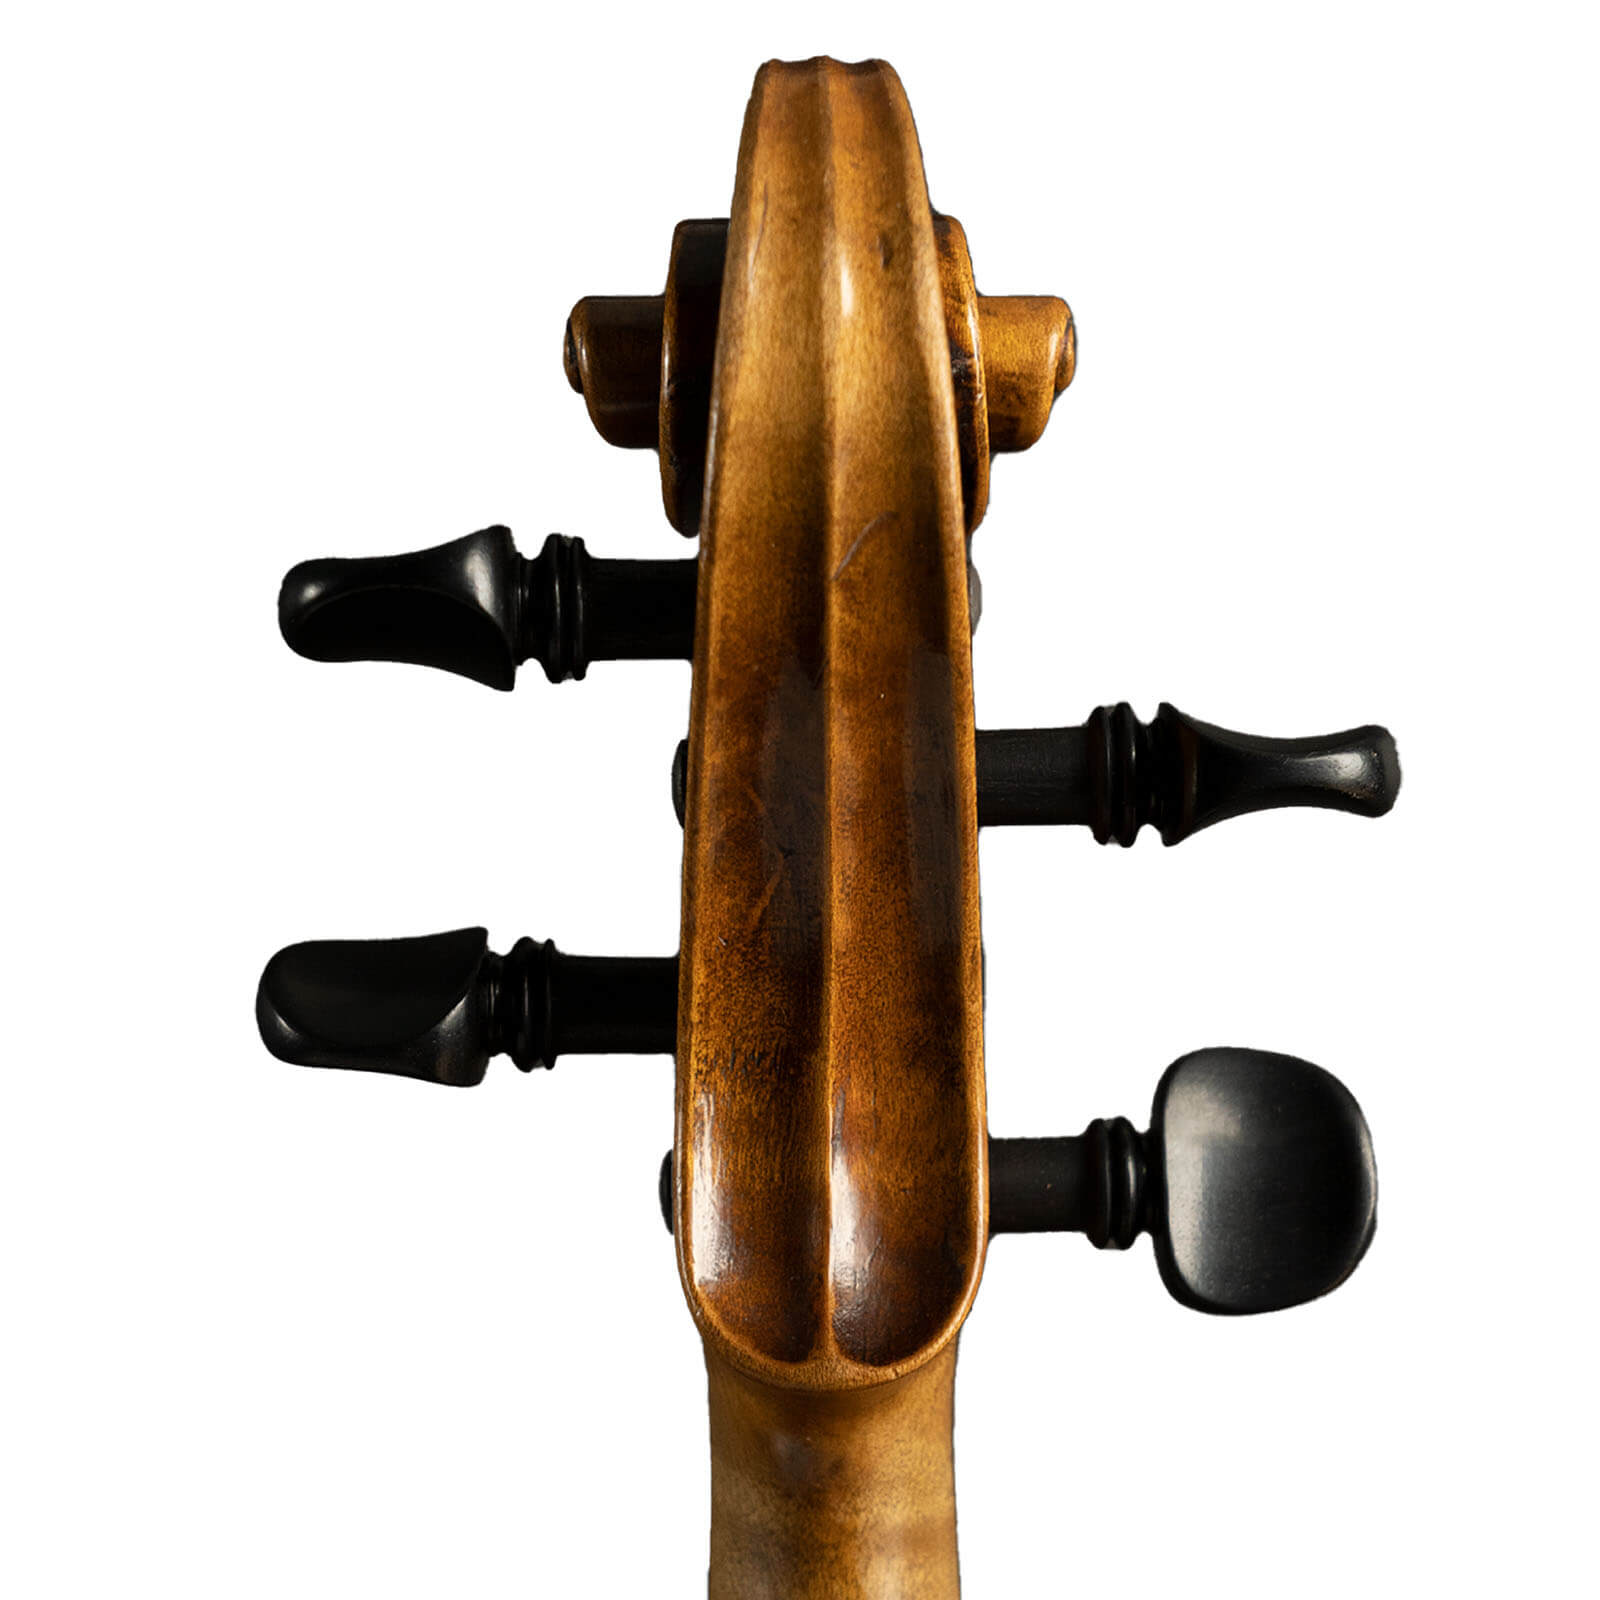 Carl Hammerschmidt Violin, Czech Republic, c.1925